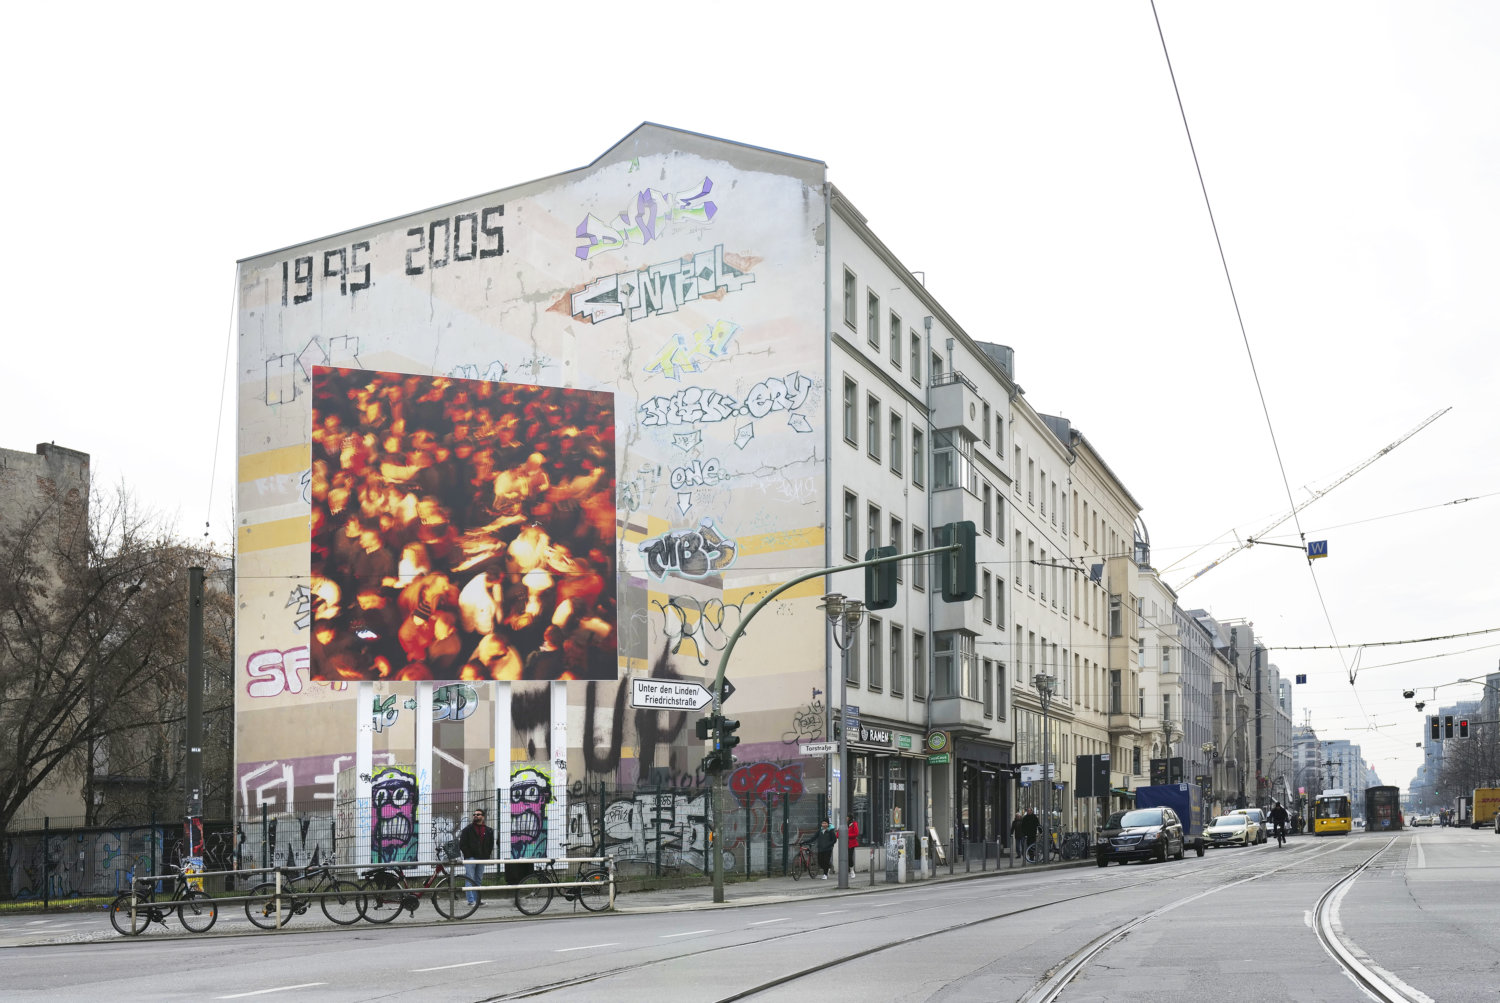 Straßenansicht in Berlin-Mitte, eine mit Graffiti besprühte Häuserfassade, vor der ein großes Bildboard einer Nan Goldin Fotografie steht